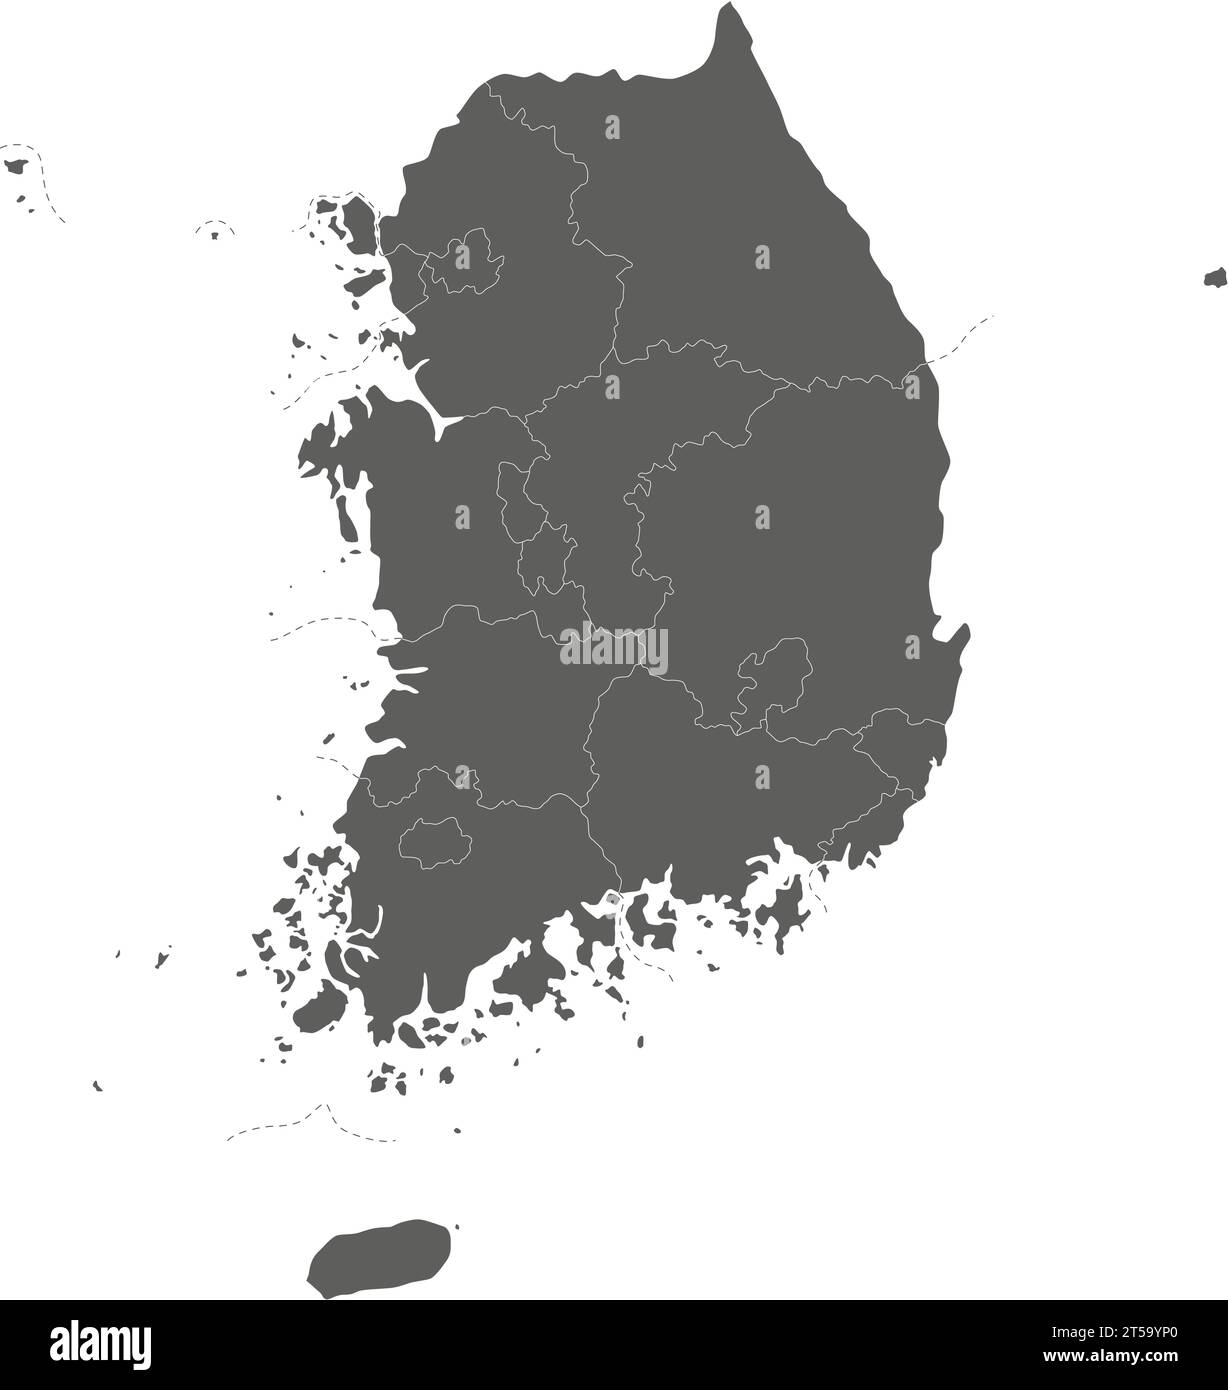 Mappa vettoriale vuota della Corea del Sud con province, città metropolitane e divisioni amministrative. Livelli modificabili e chiaramente etichettati. Illustrazione Vettoriale